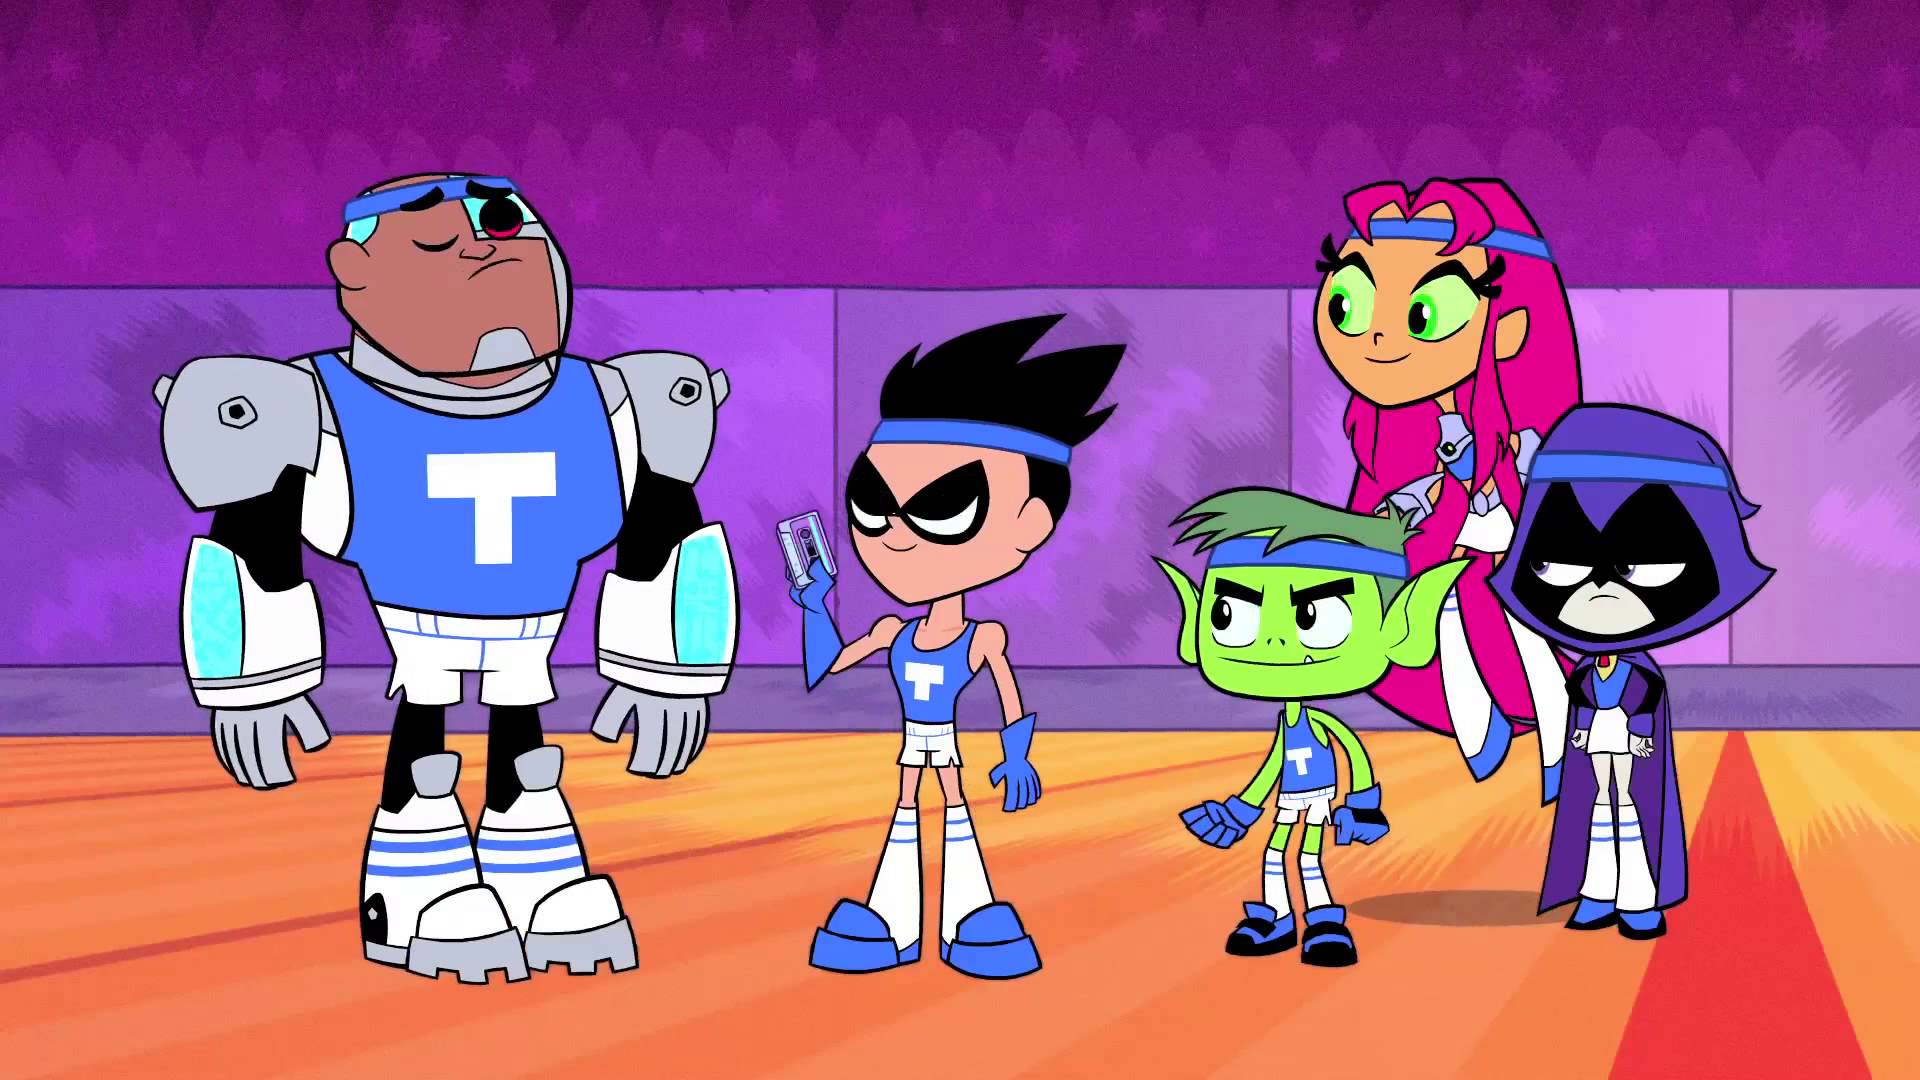 teen titans go!, tv show, beast boy, cyborg (dc comics), dick grayson, raven (dc comics), robin (dc comics), starfire (dc comics), teen titans